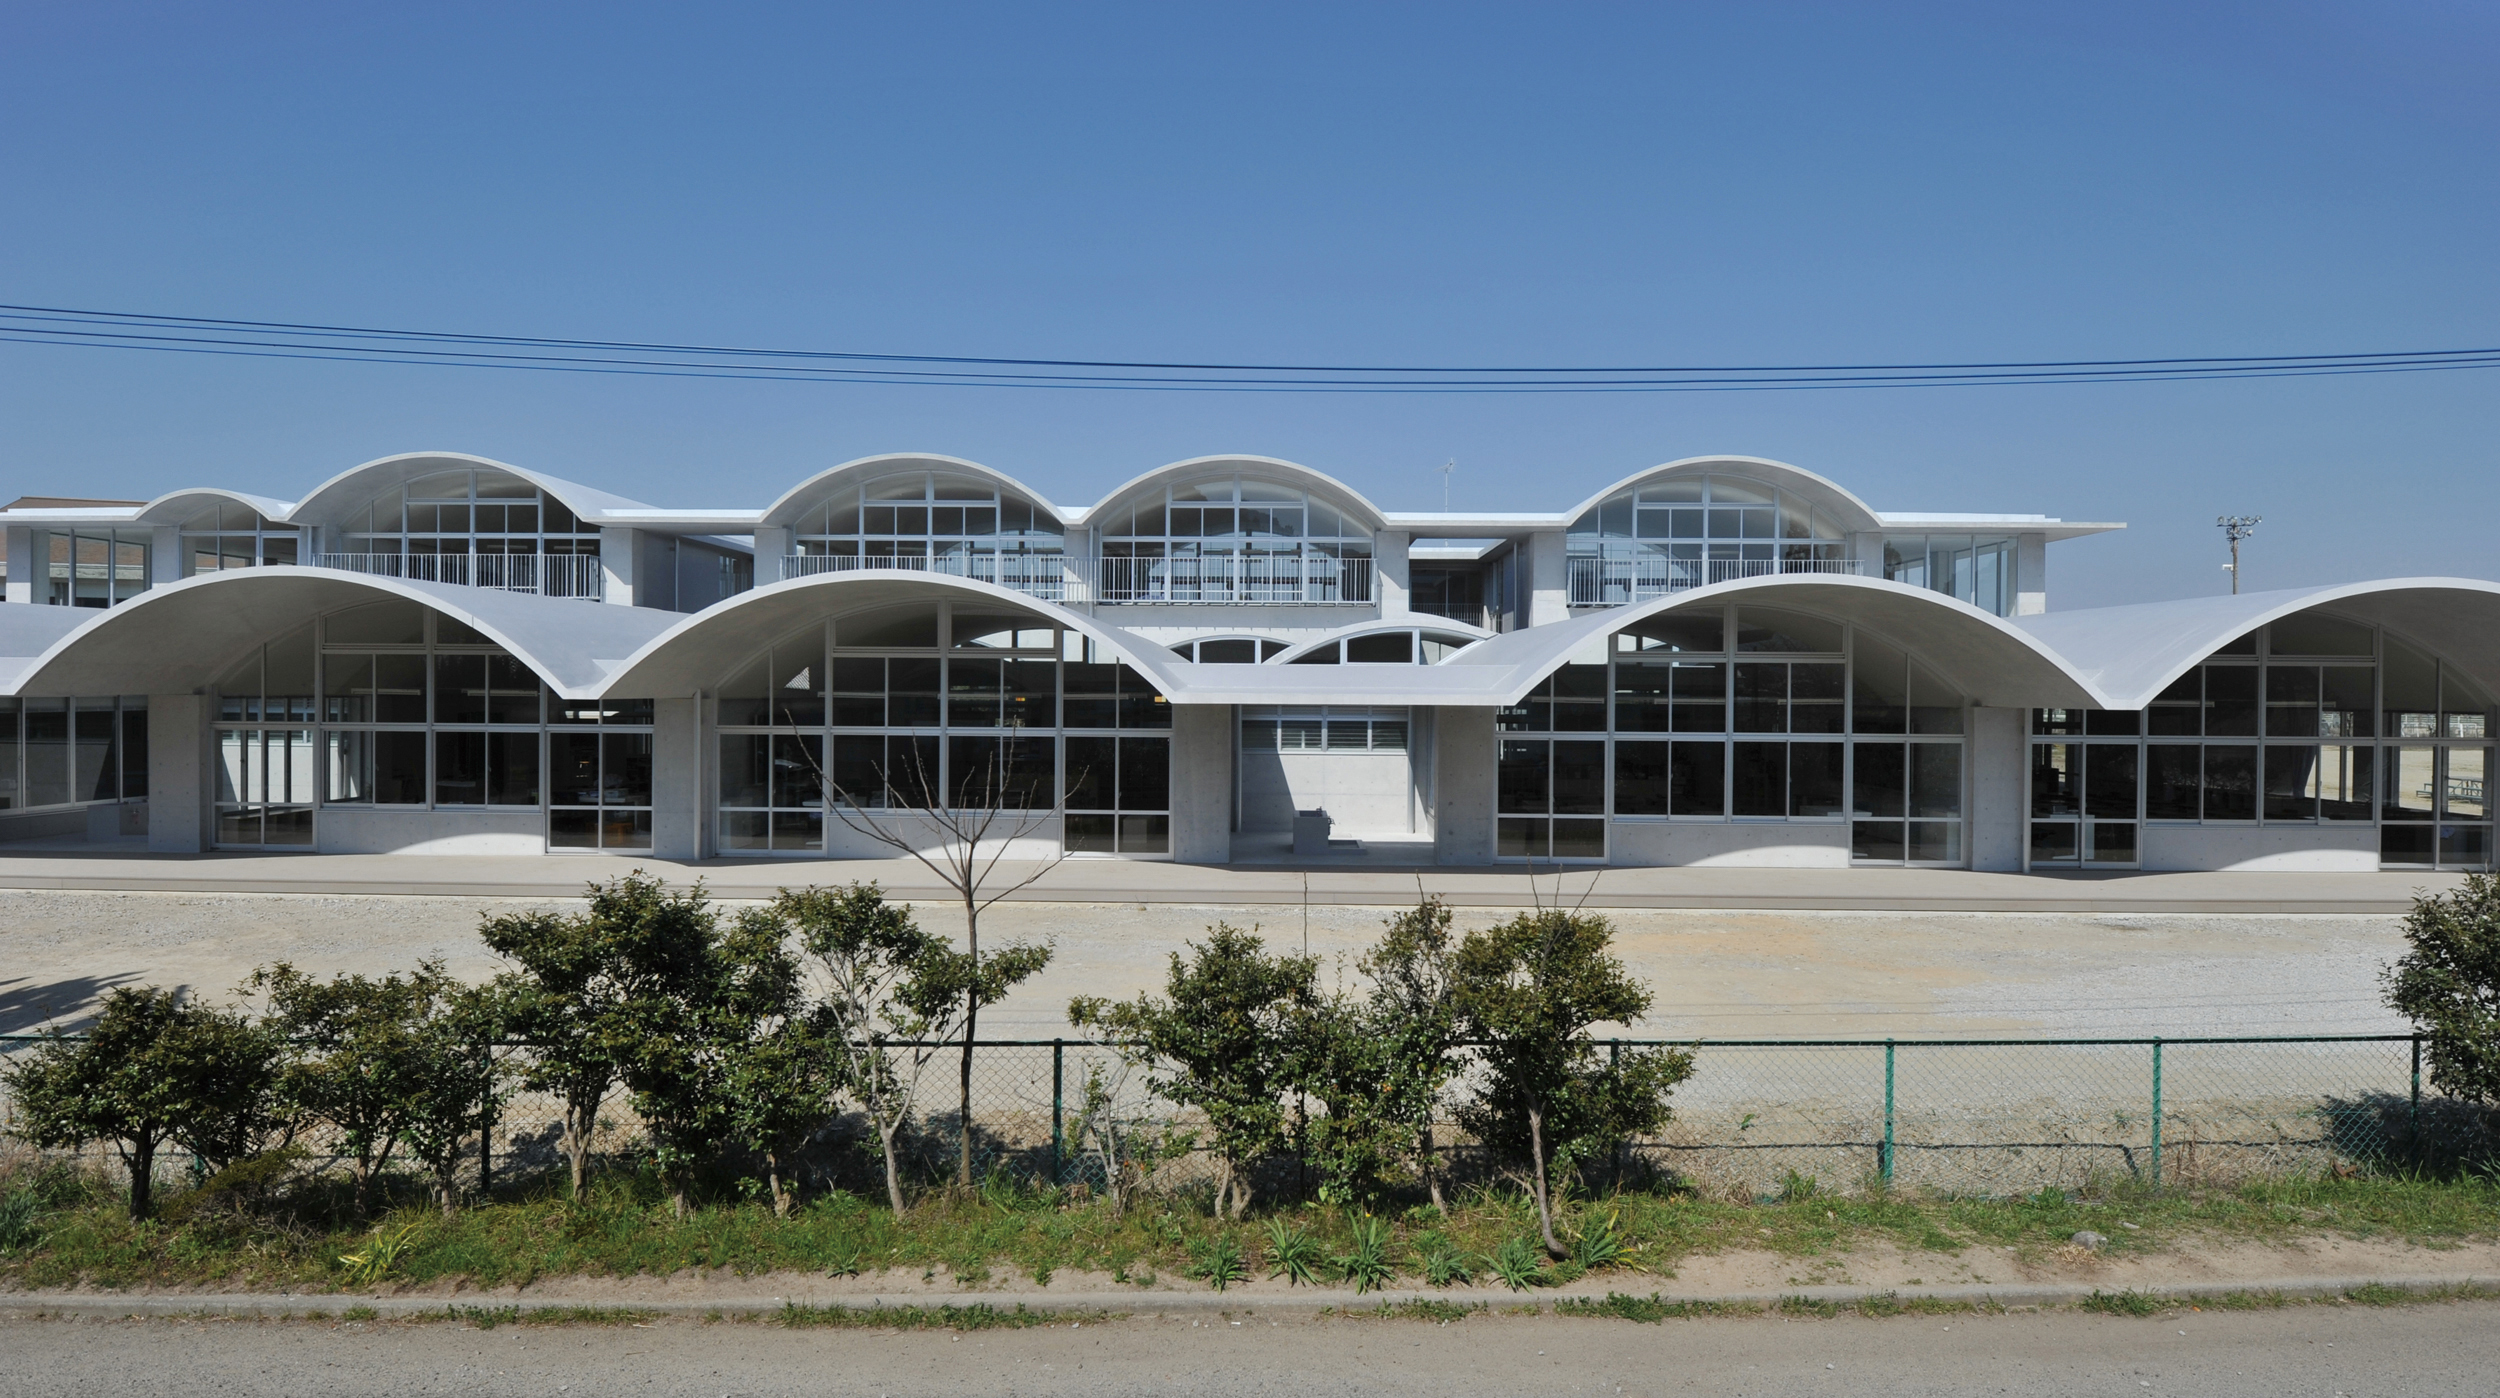 Amitsu Municipal Elementary School